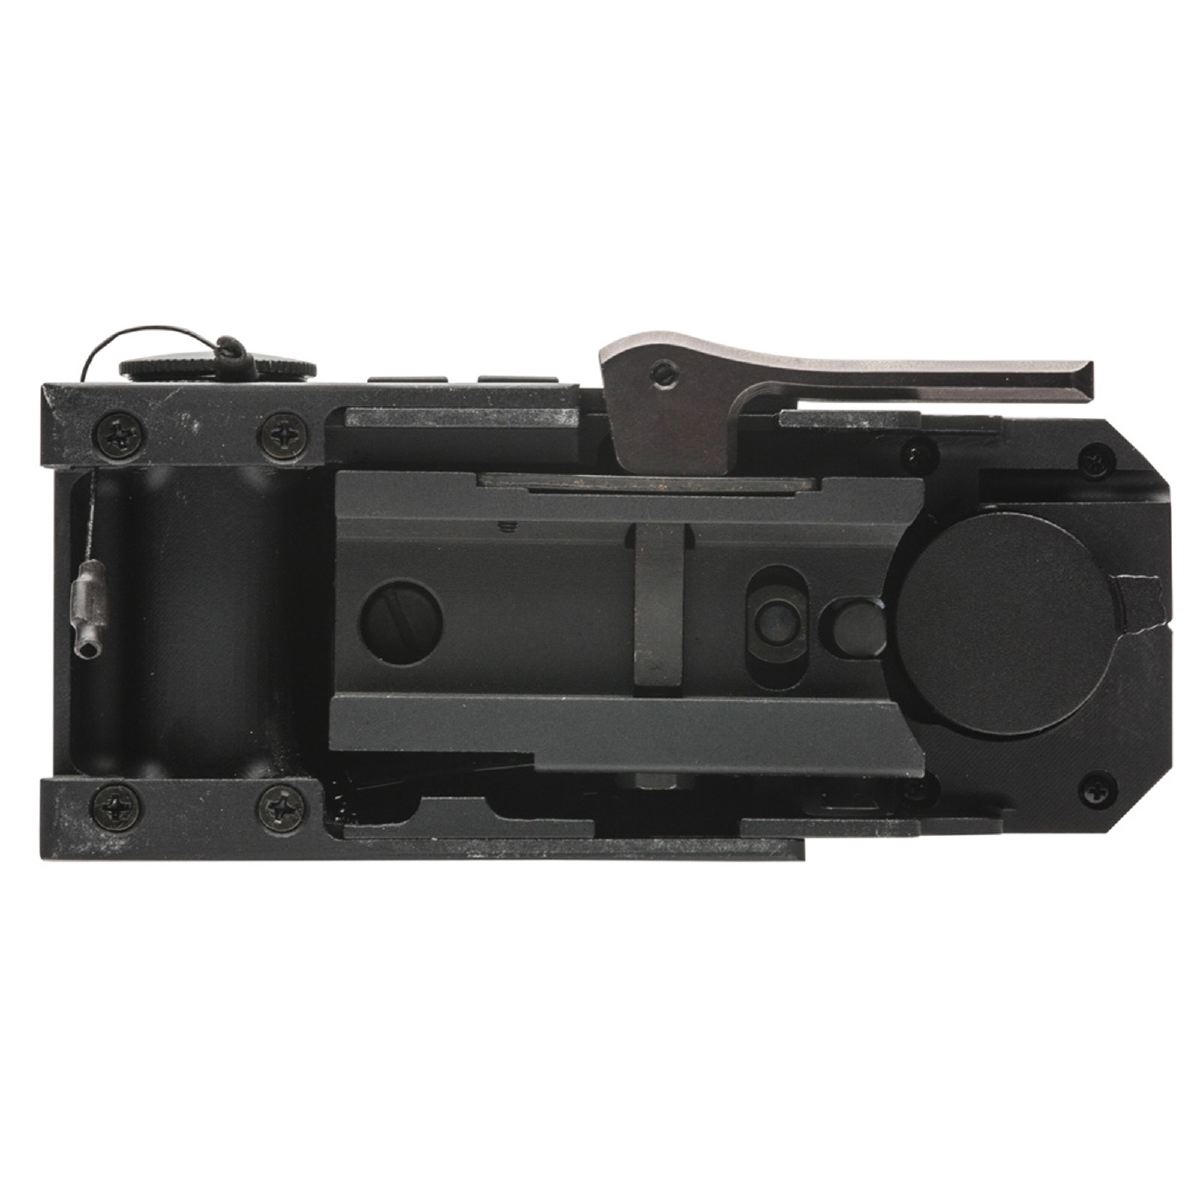 SightMark Rotpunktvisier Ultra Shot R-Spec  16 Helligkeitseinstellungen  Parallaxekorrektur  lange Batterielaufzeit